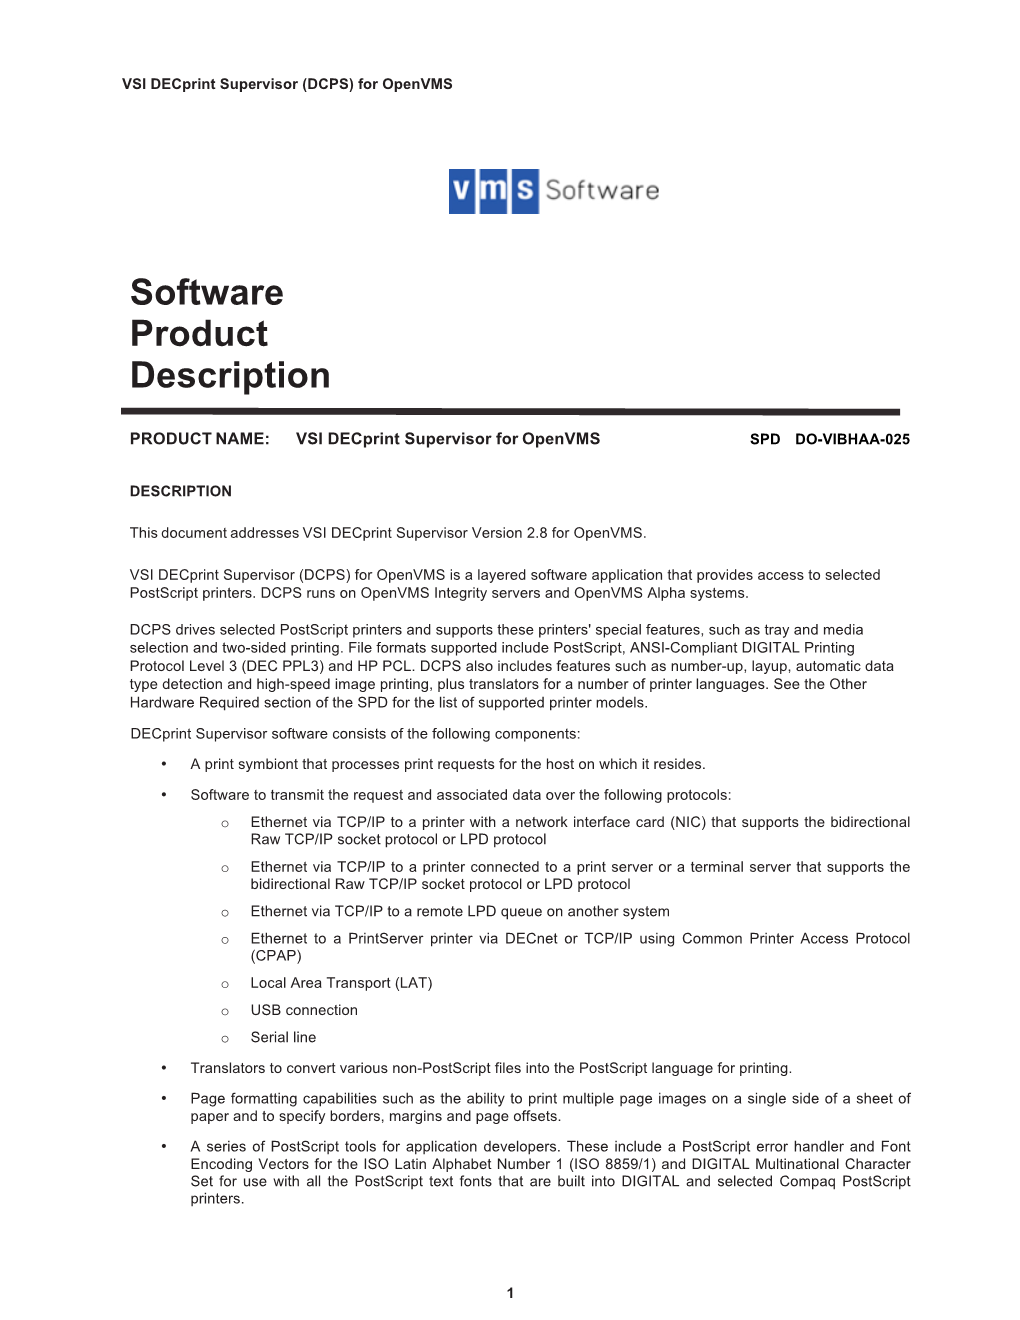 Software Product Description